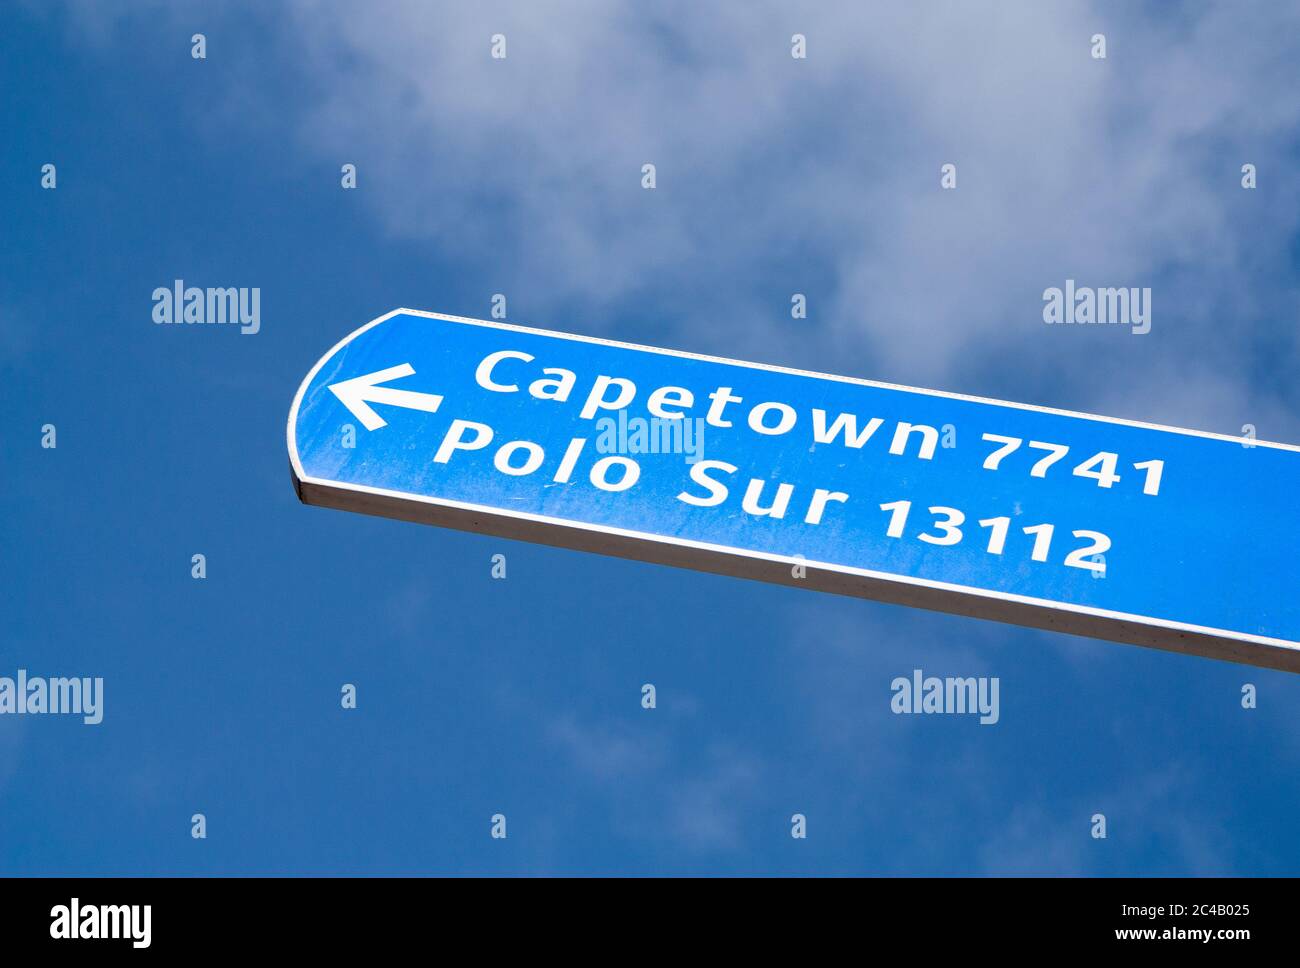 Kapstadt und Südpol (Polo sur auf Spanisch) Schild Stockfoto